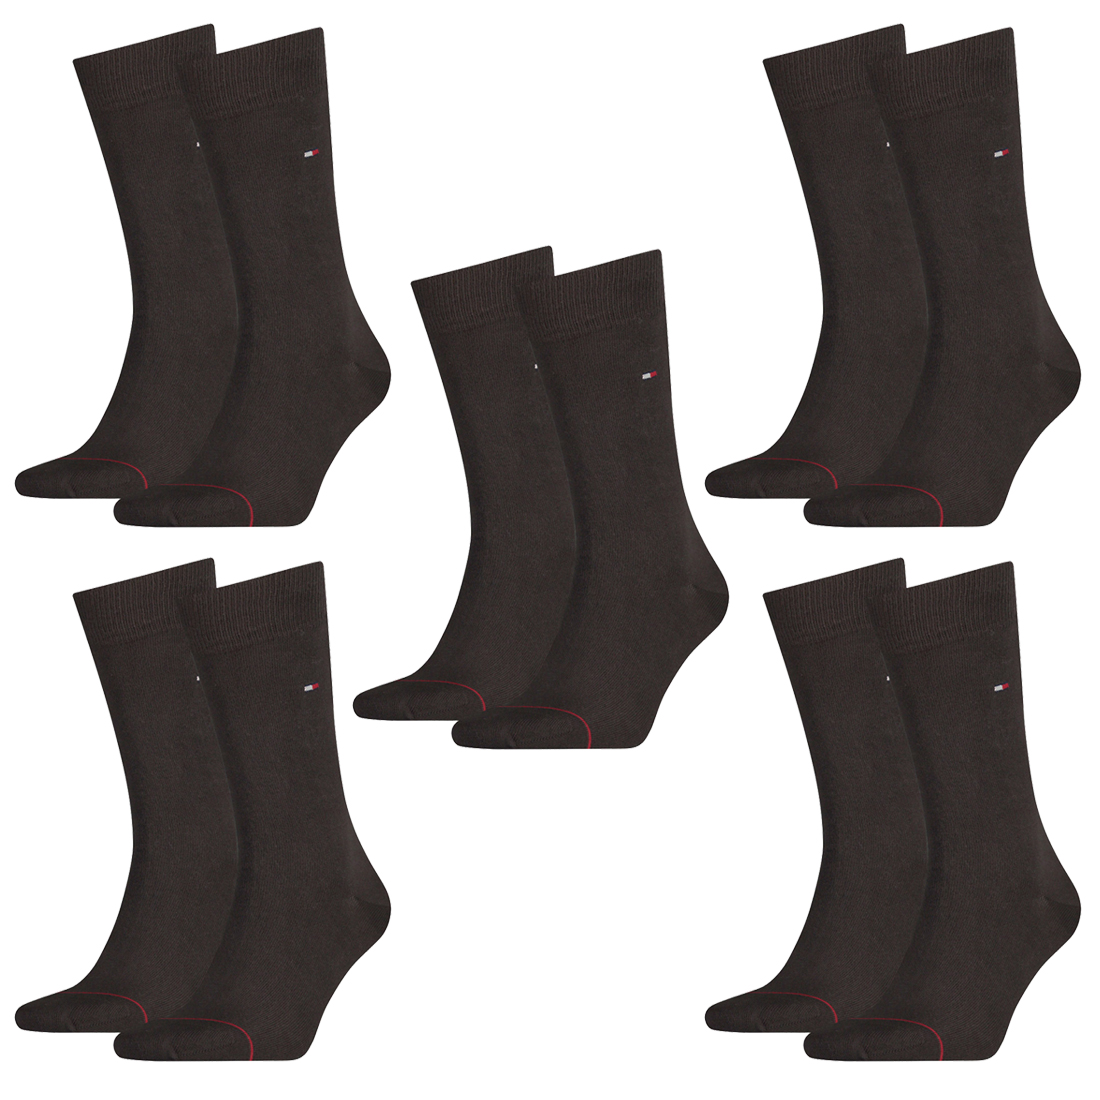 10 Paar TOMMY HILFIGER Classic Socken Gr. 39 - 49 Herren Business Socken 937 - kensington brown, 39-42 von Tommy Hilfiger